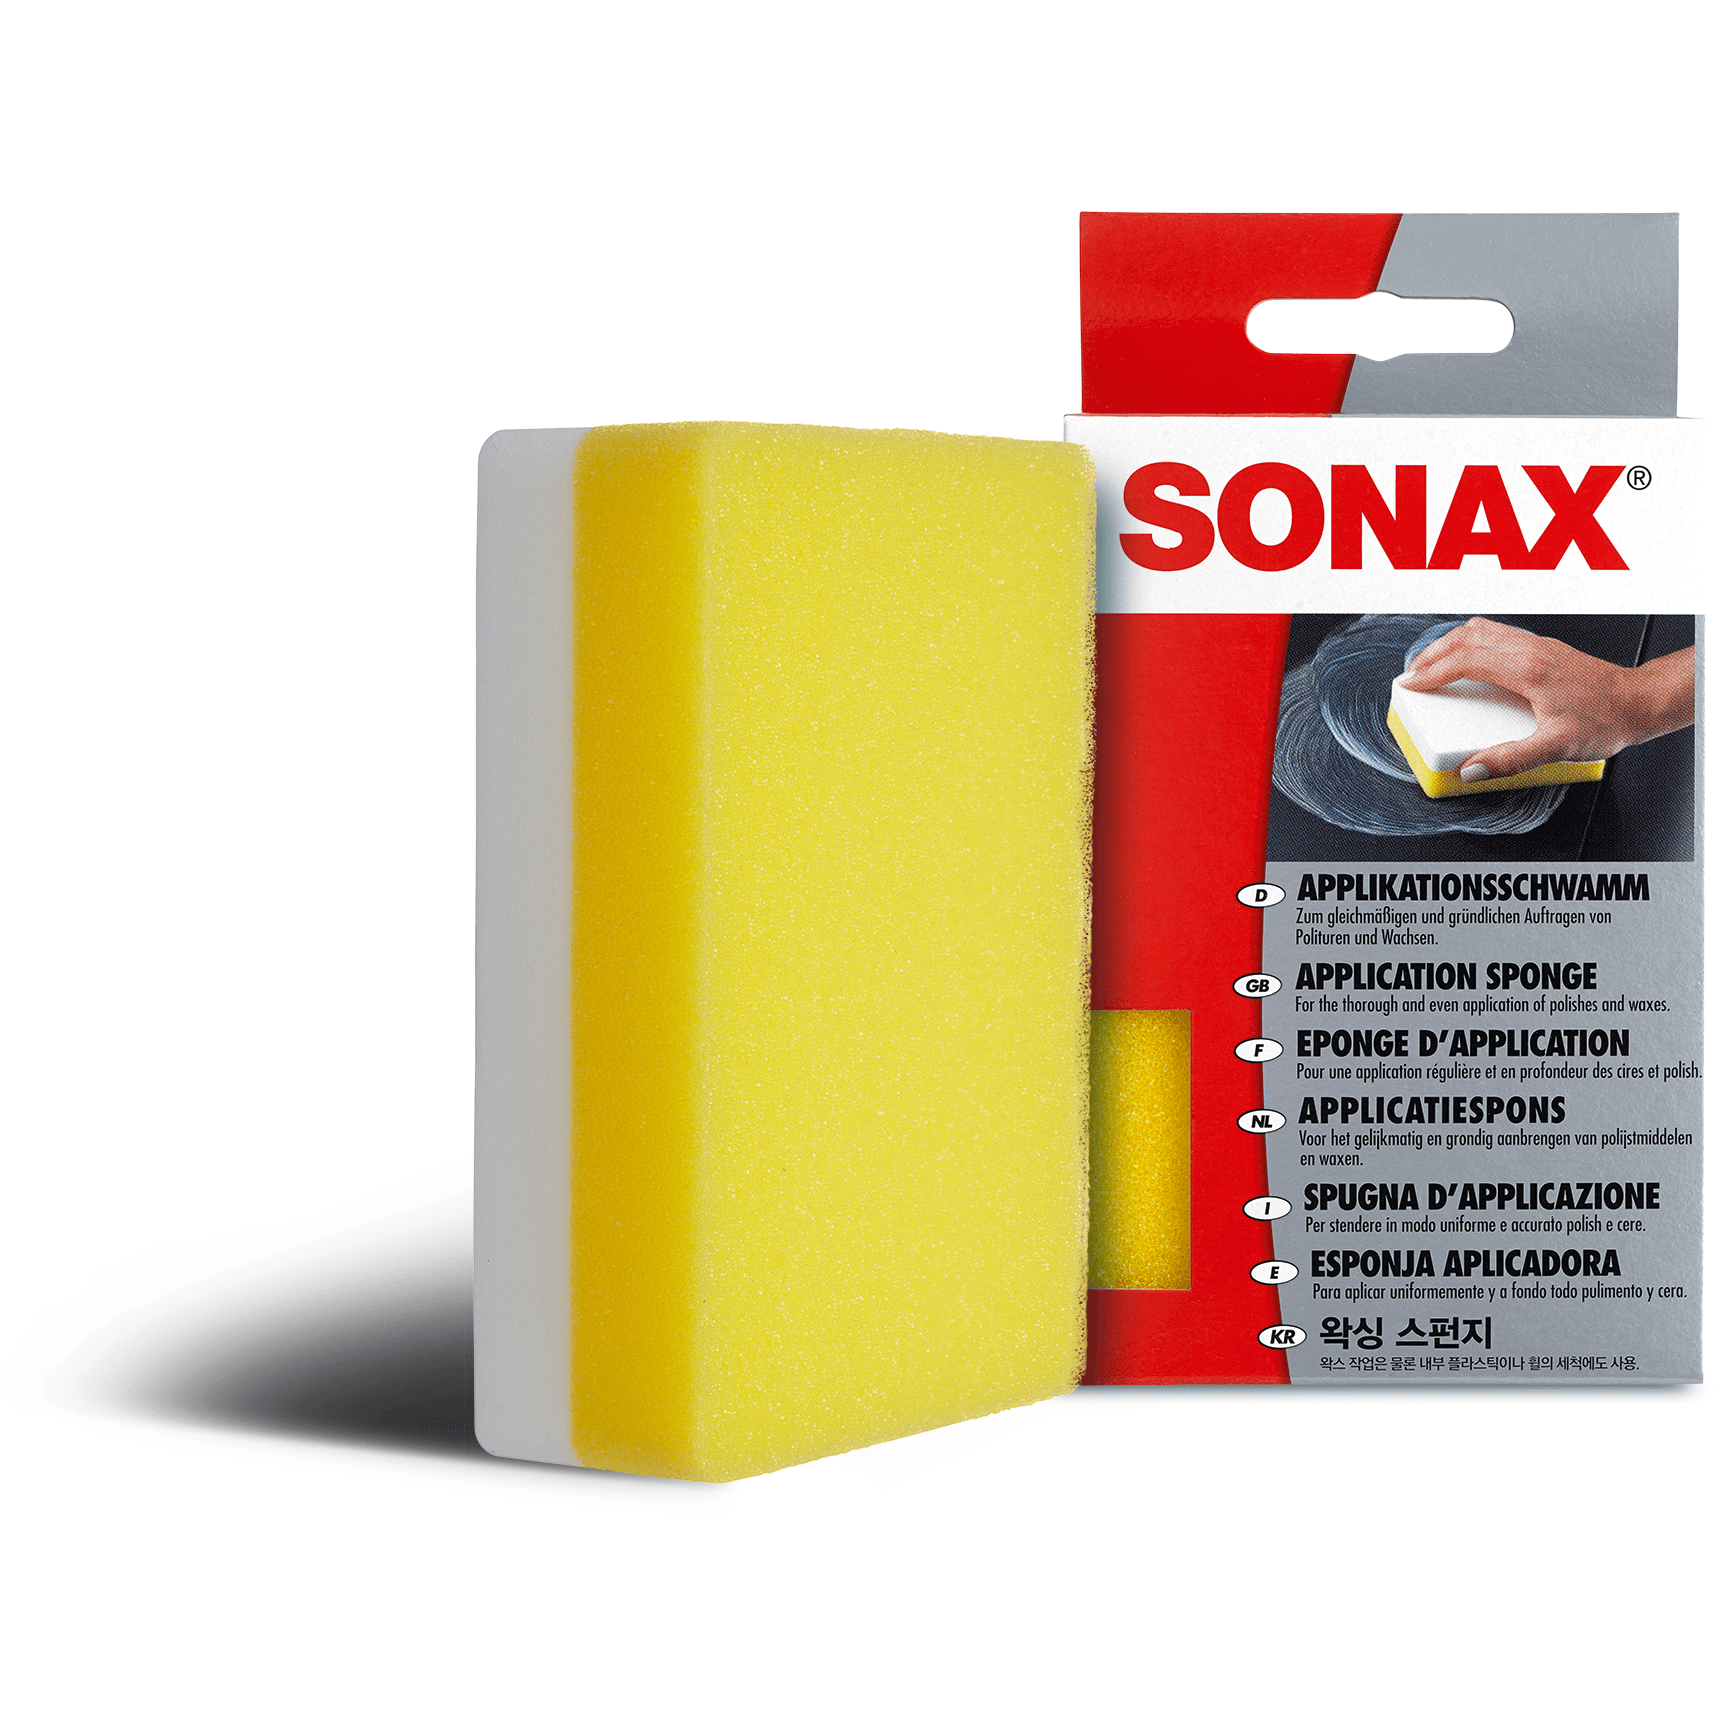 SONAX påføringssvamp - Xpert Cleaning